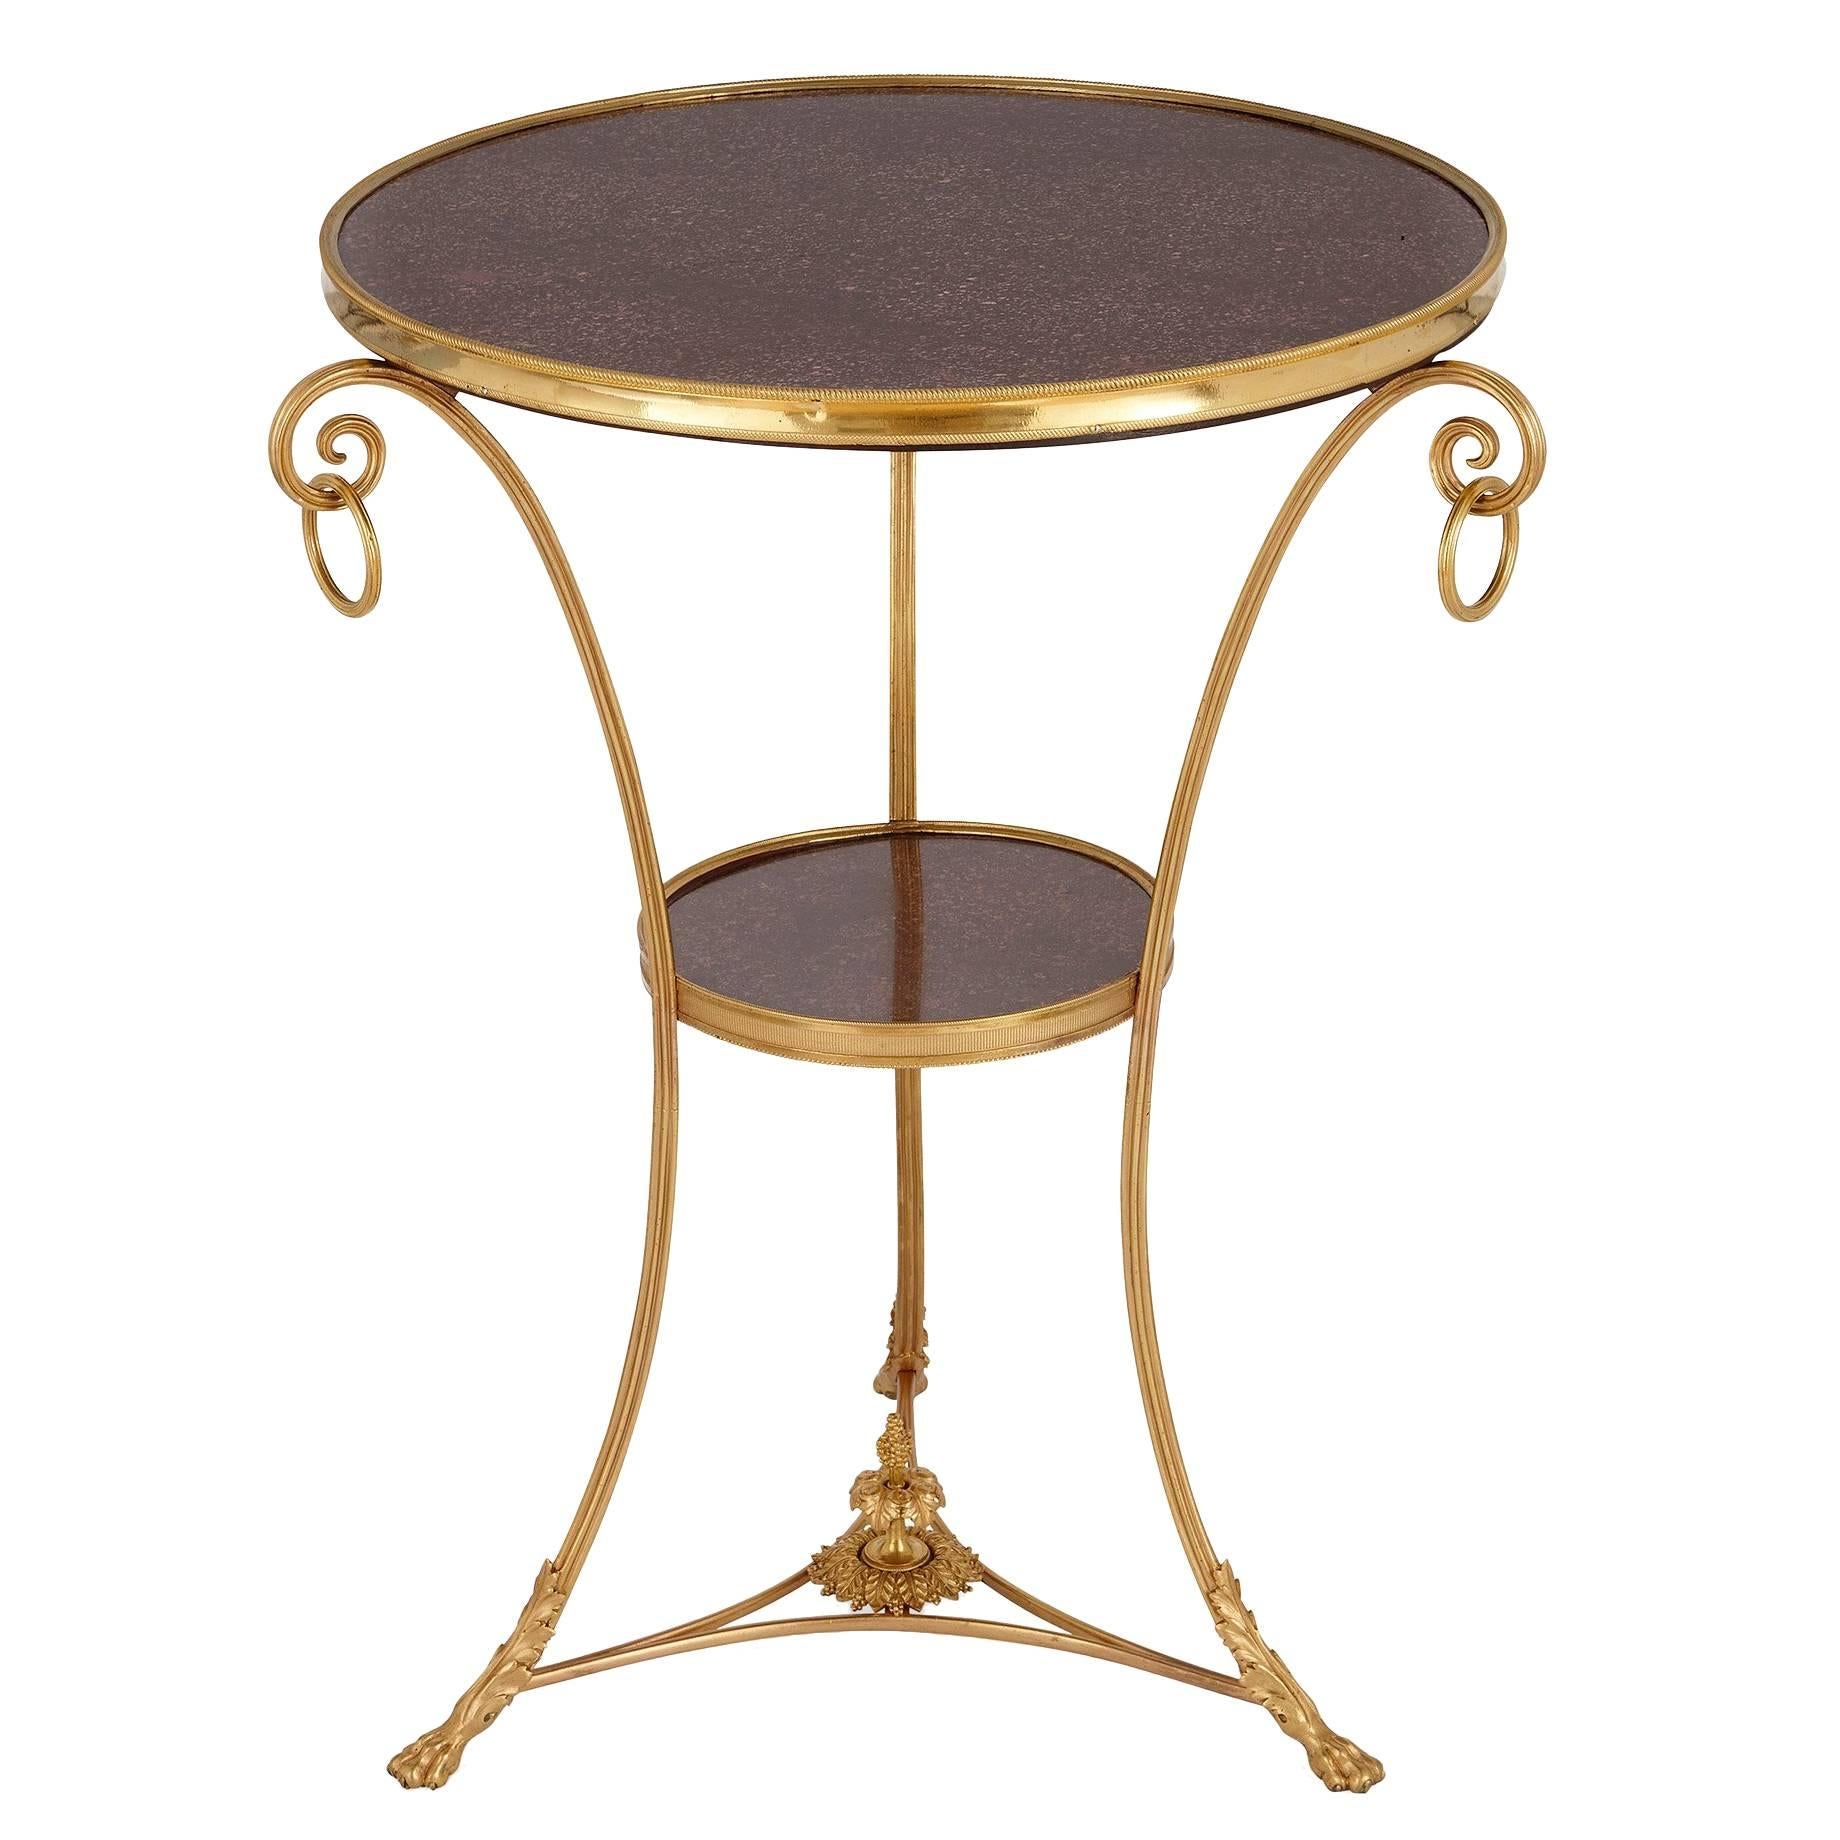 Ormolu and Porphyry French Antique Circular Gueridon Table